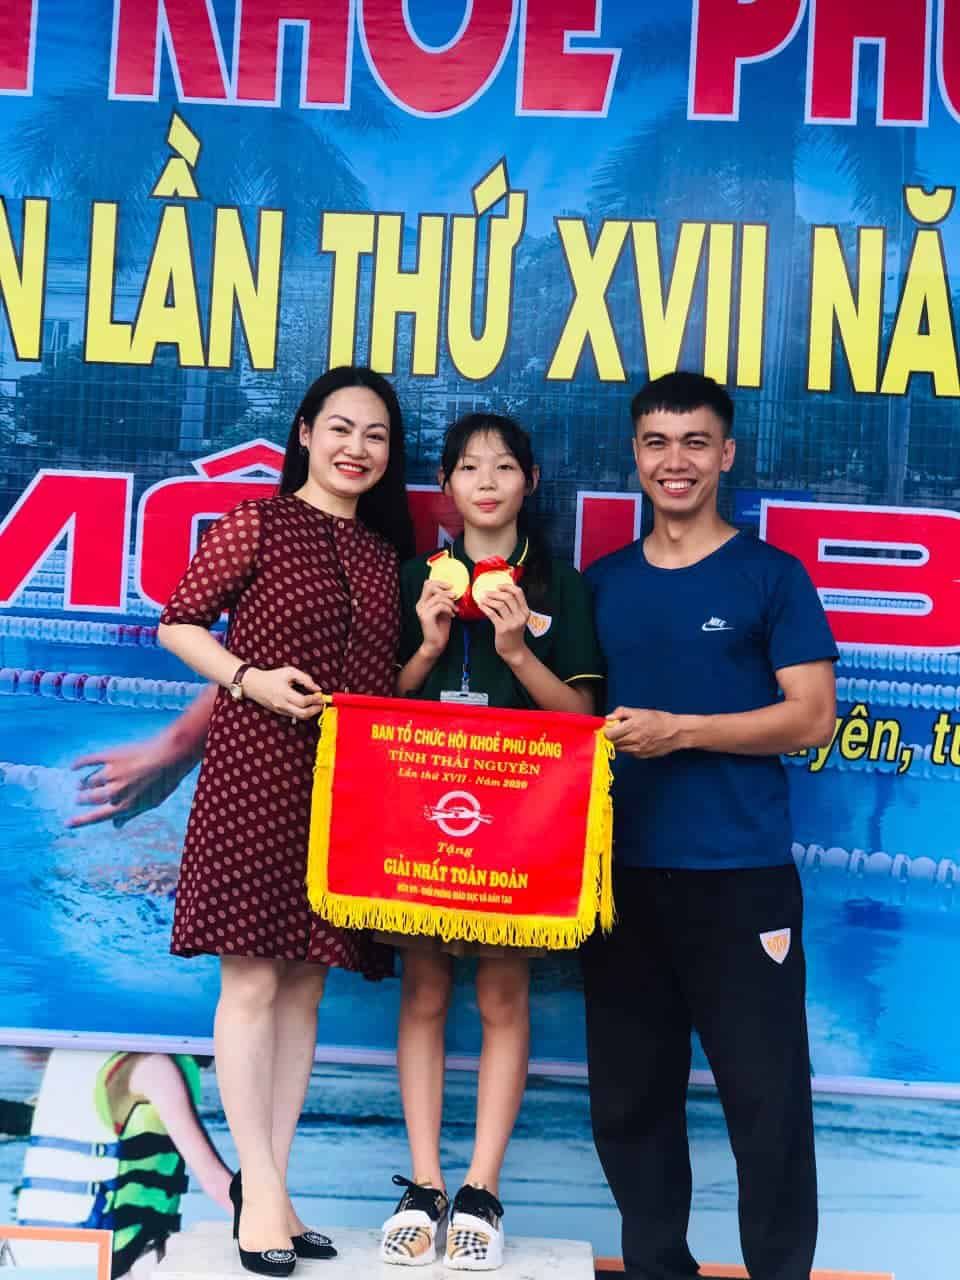 Học sinh Trần Phương Thảo - chủ nhân của cú đúp huy chương vàng môn bơi tại Hội khỏe Phù Đổng tỉnh Thái Nguyên